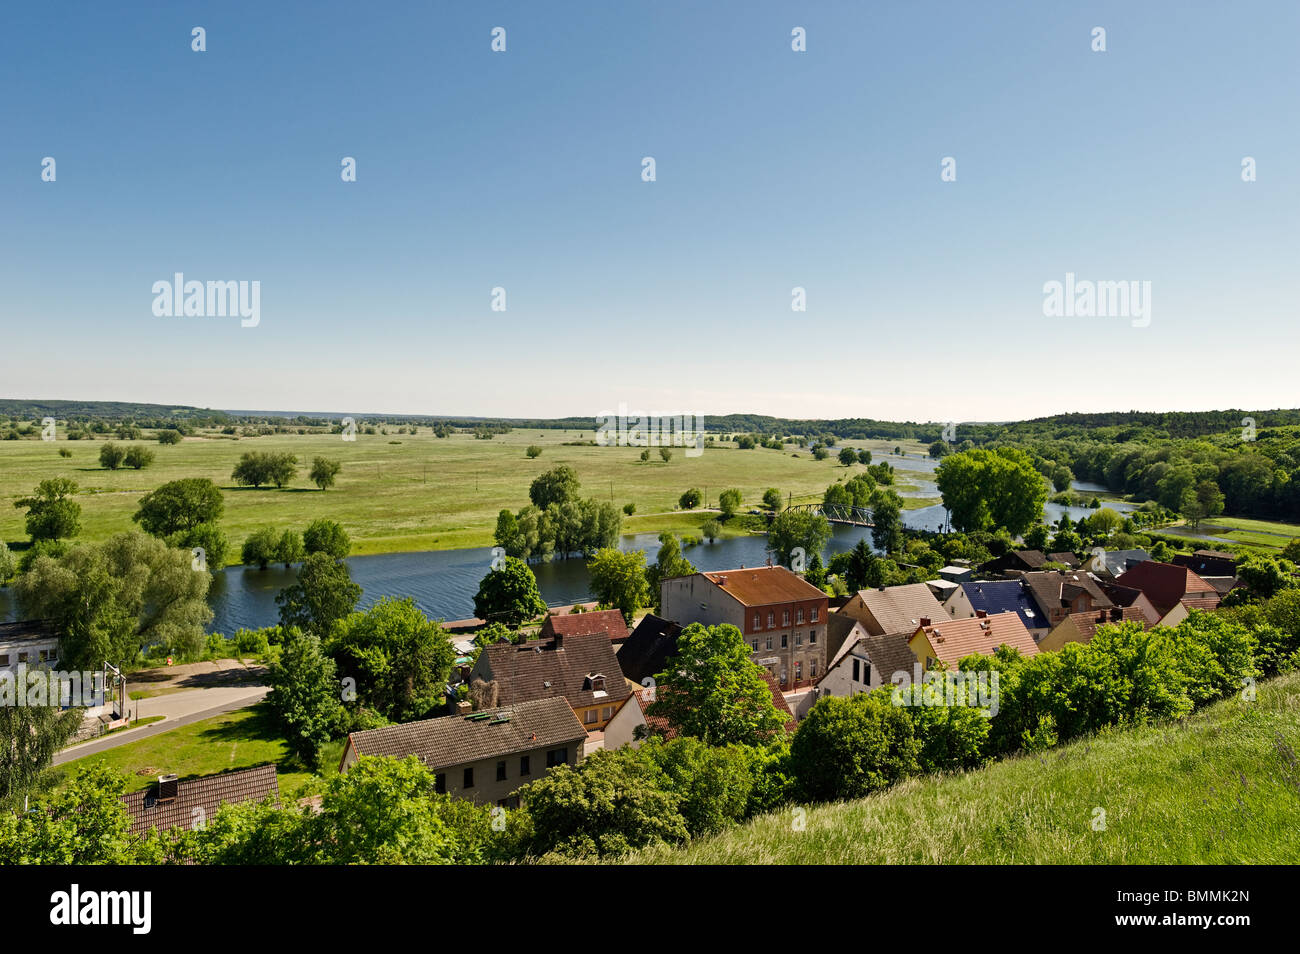 View towards Hohensaaten-Friedrichsthal Waterway, Lower Oder Valley National Park, Stolpe an der Oder, Brandenburg, Germany Stock Photo